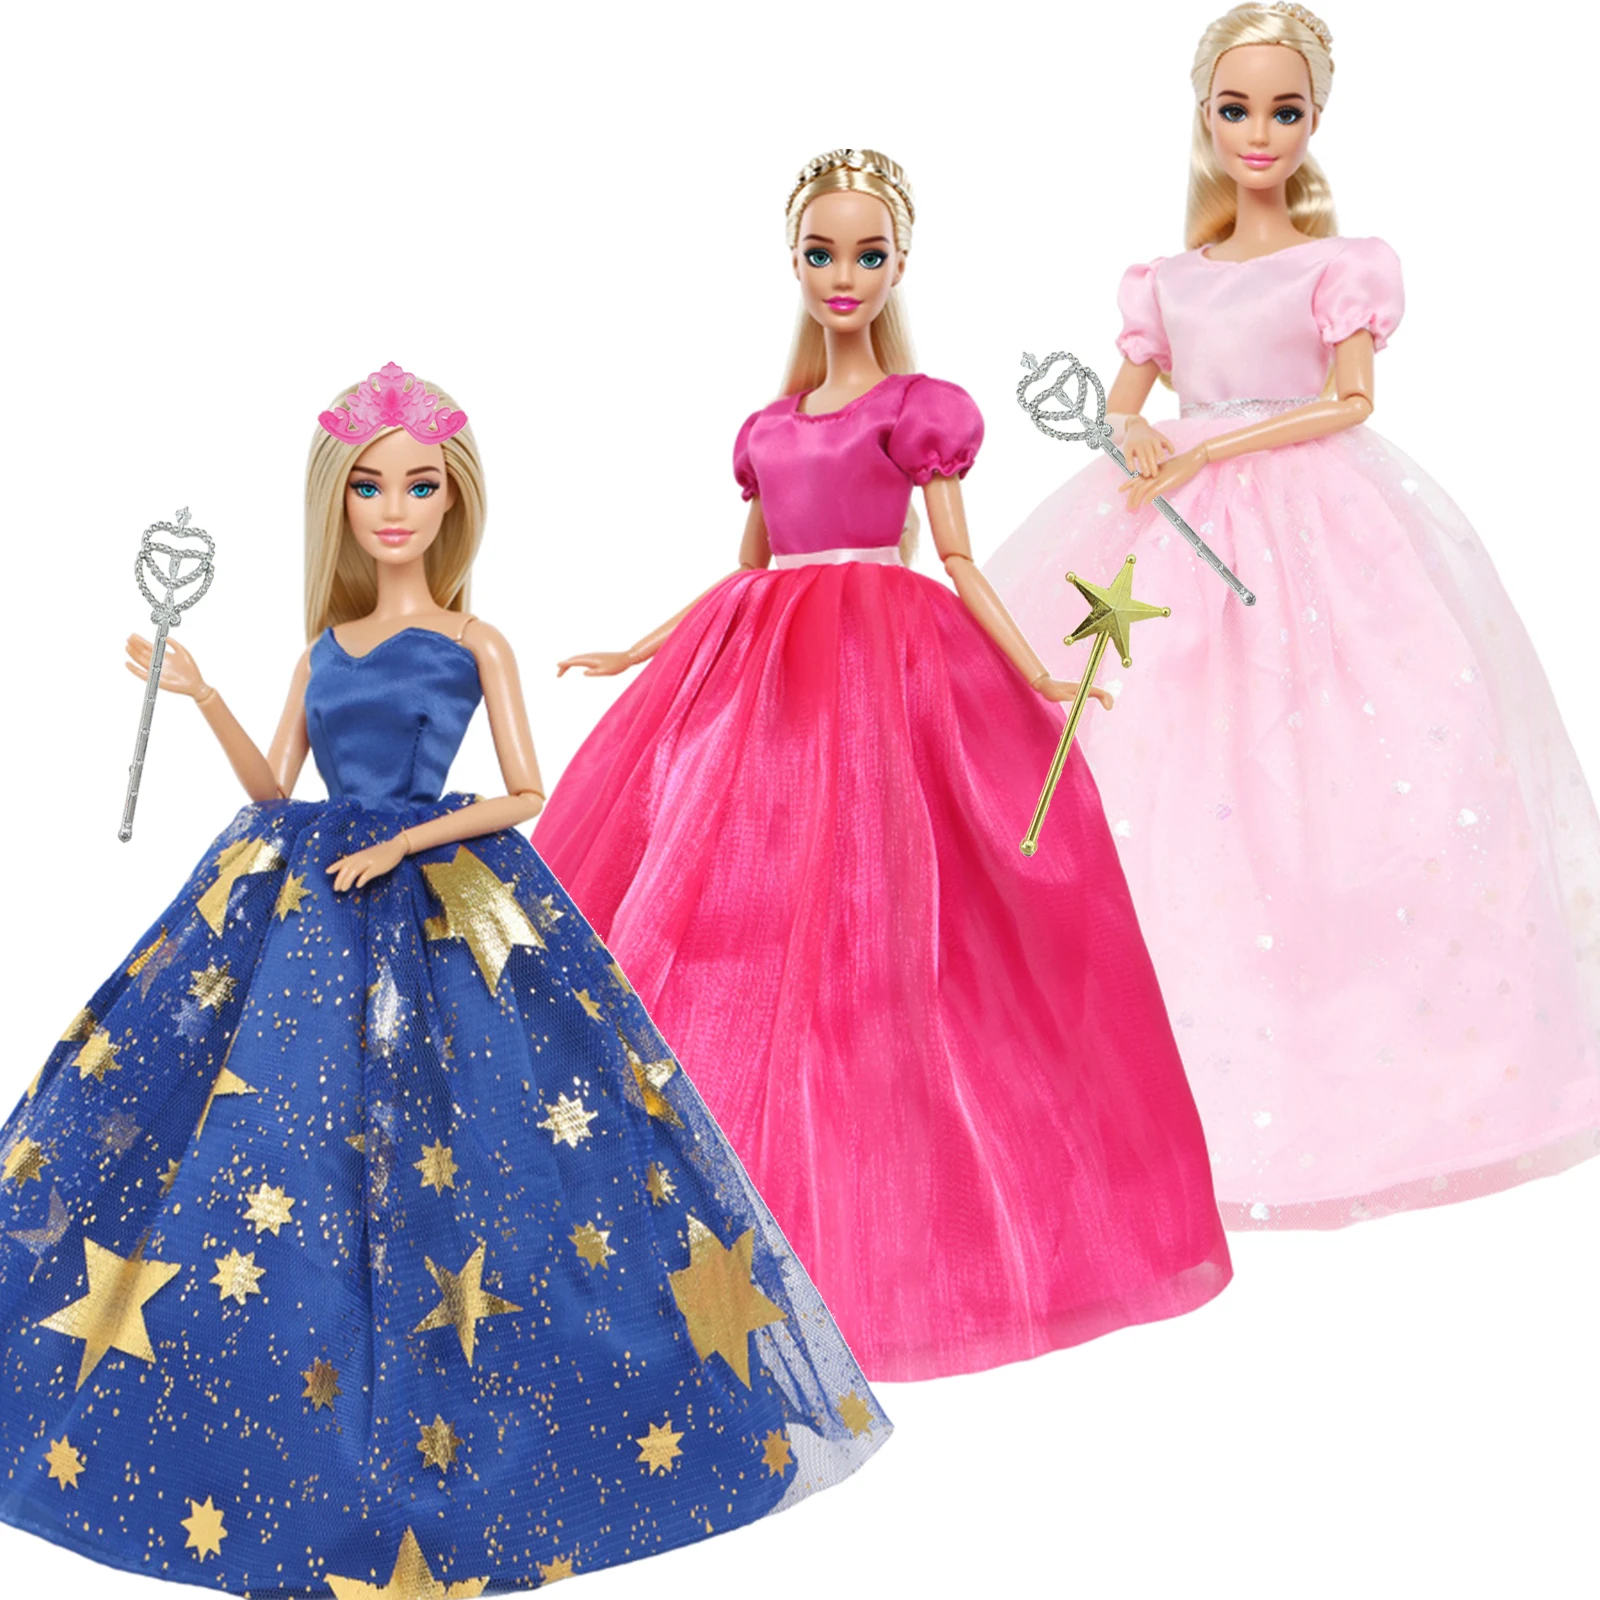 Модное кукольное платье, бальное платье, юбка для свадебной вечеринки, одежда принцессы в короне, аксессуары для куклы Барби, 11,5-дюймовая игрушка для девочек, подарок для детей